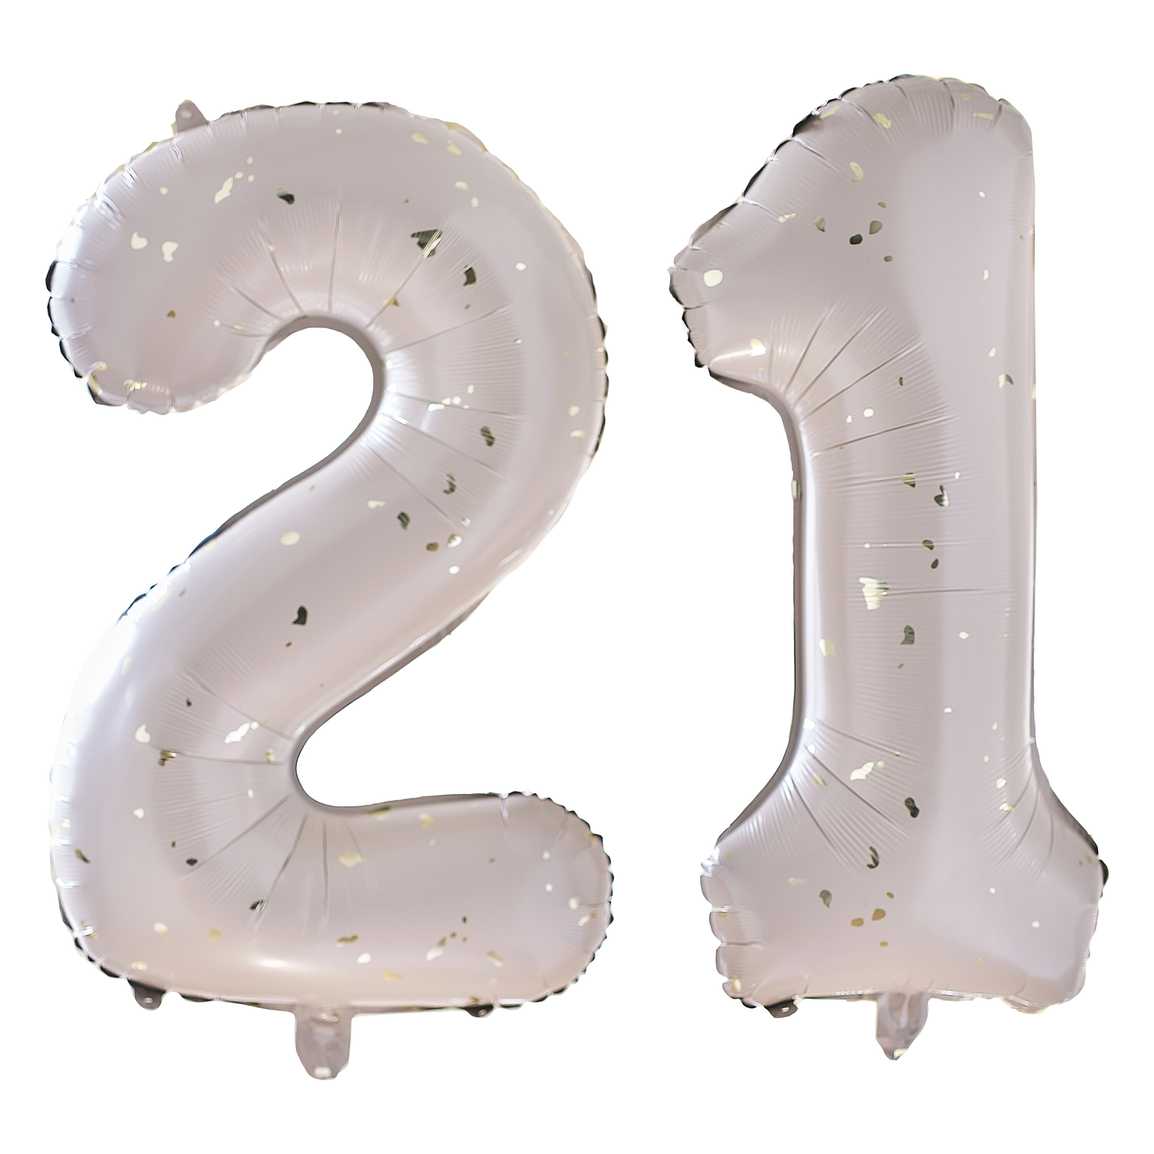 Number Balloon Bundles